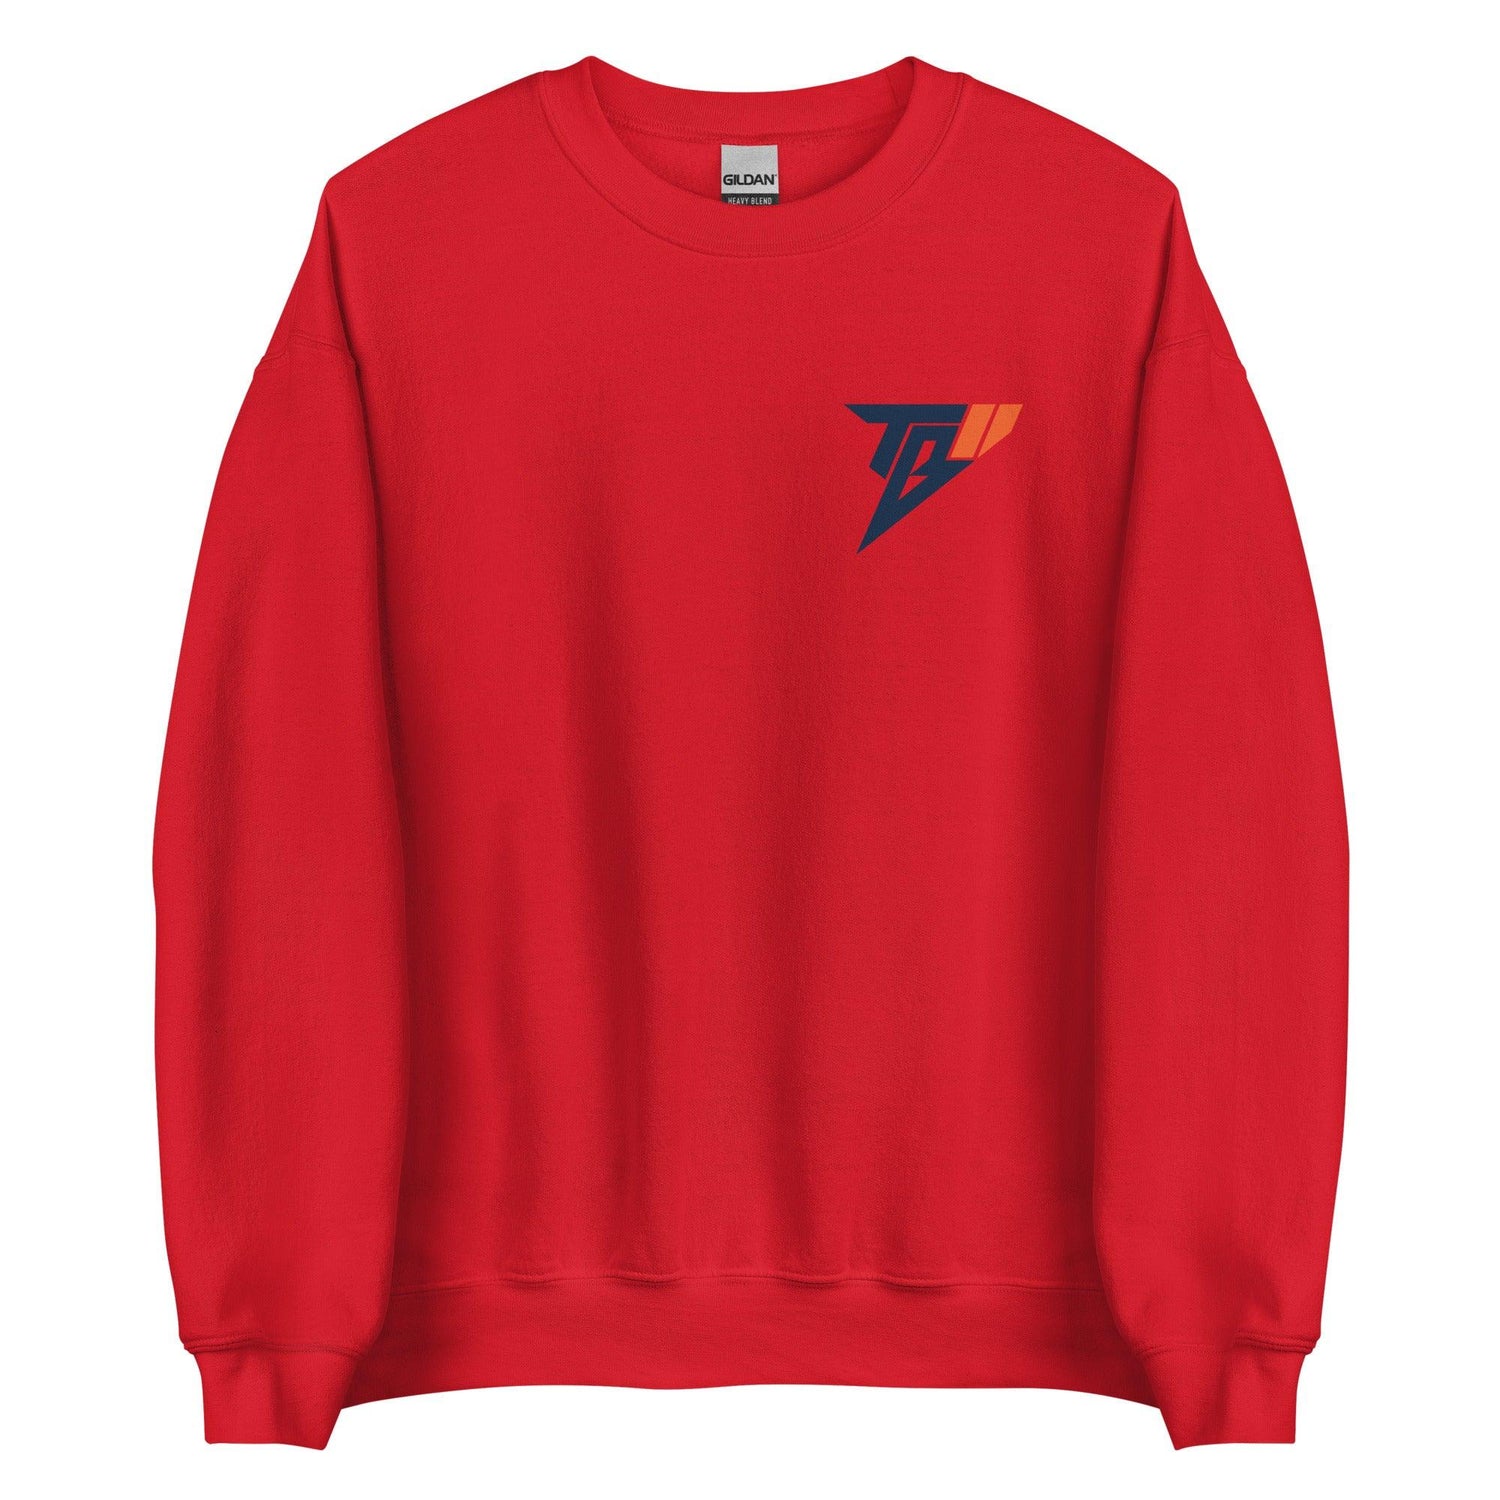 Trumane Bell II "TBII" Sweatshirt - Fan Arch